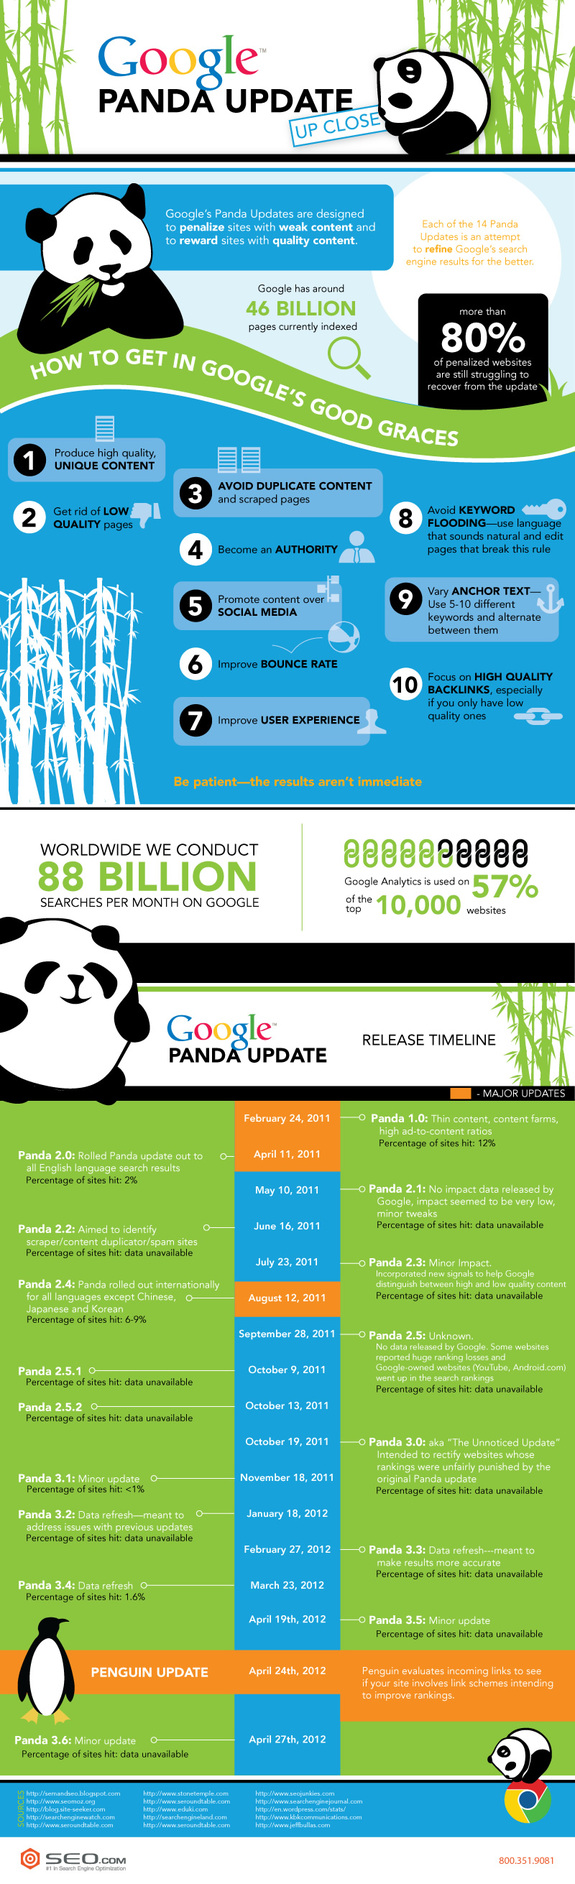 Google Panda Update infographic